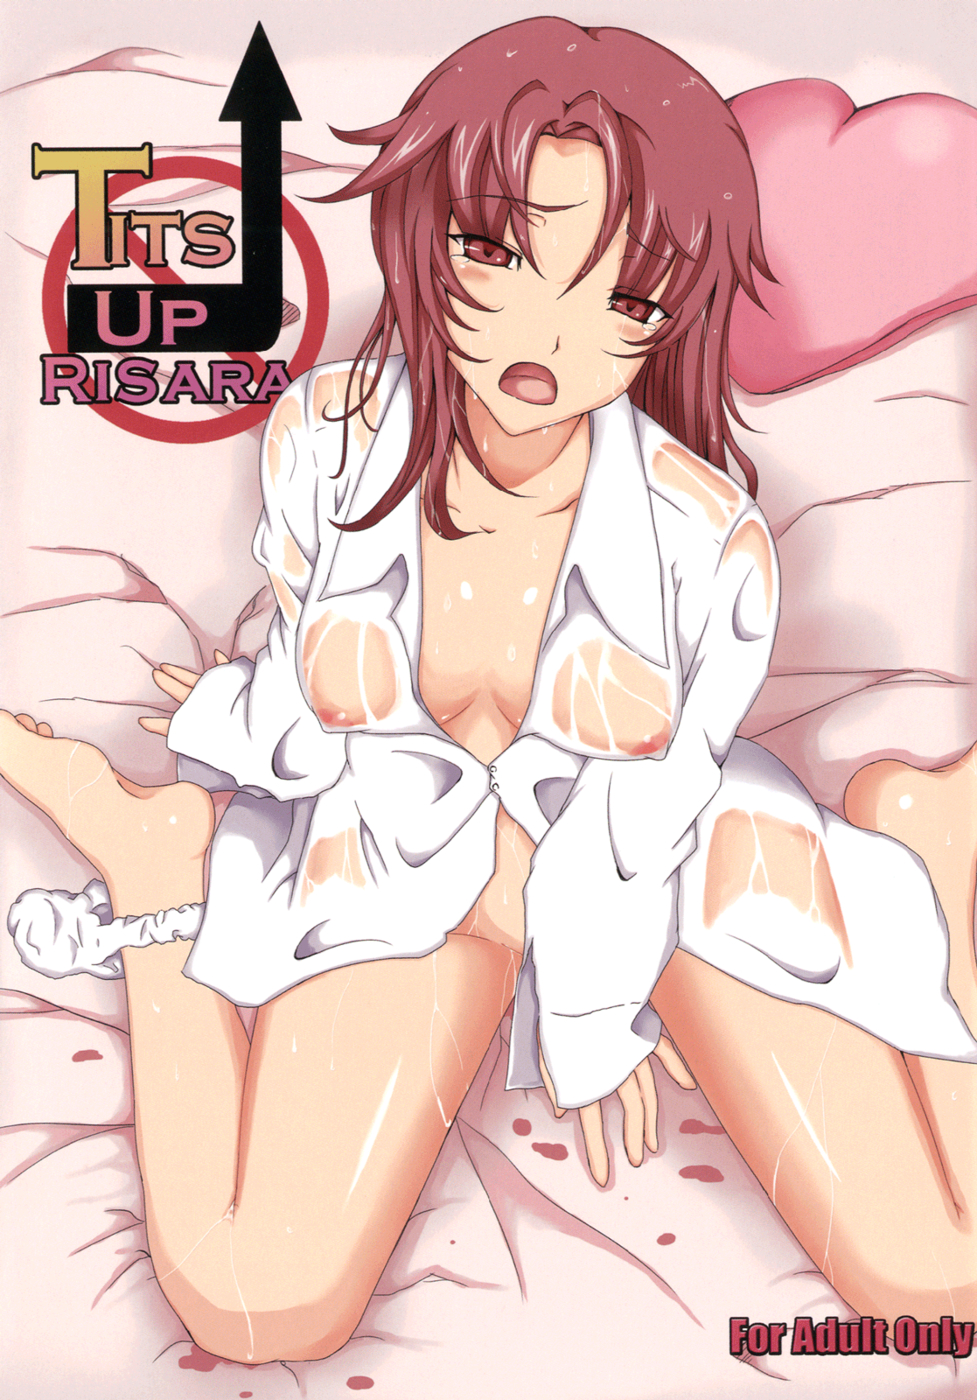 Hentai Manga Comic-Tits Up Lisara!-Read-1